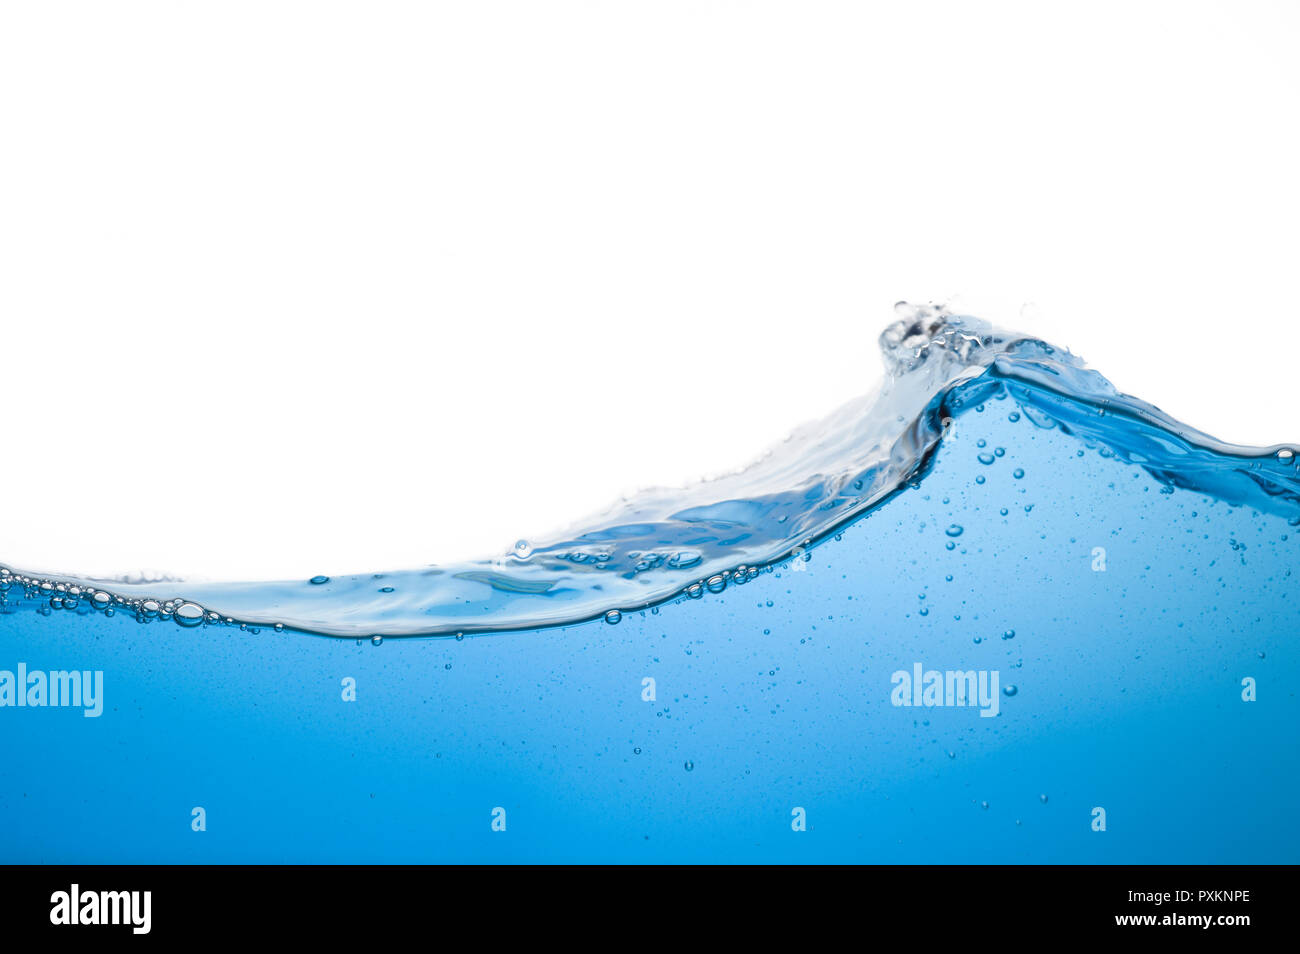 Une vague d'eau bleue claire Banque D'Images